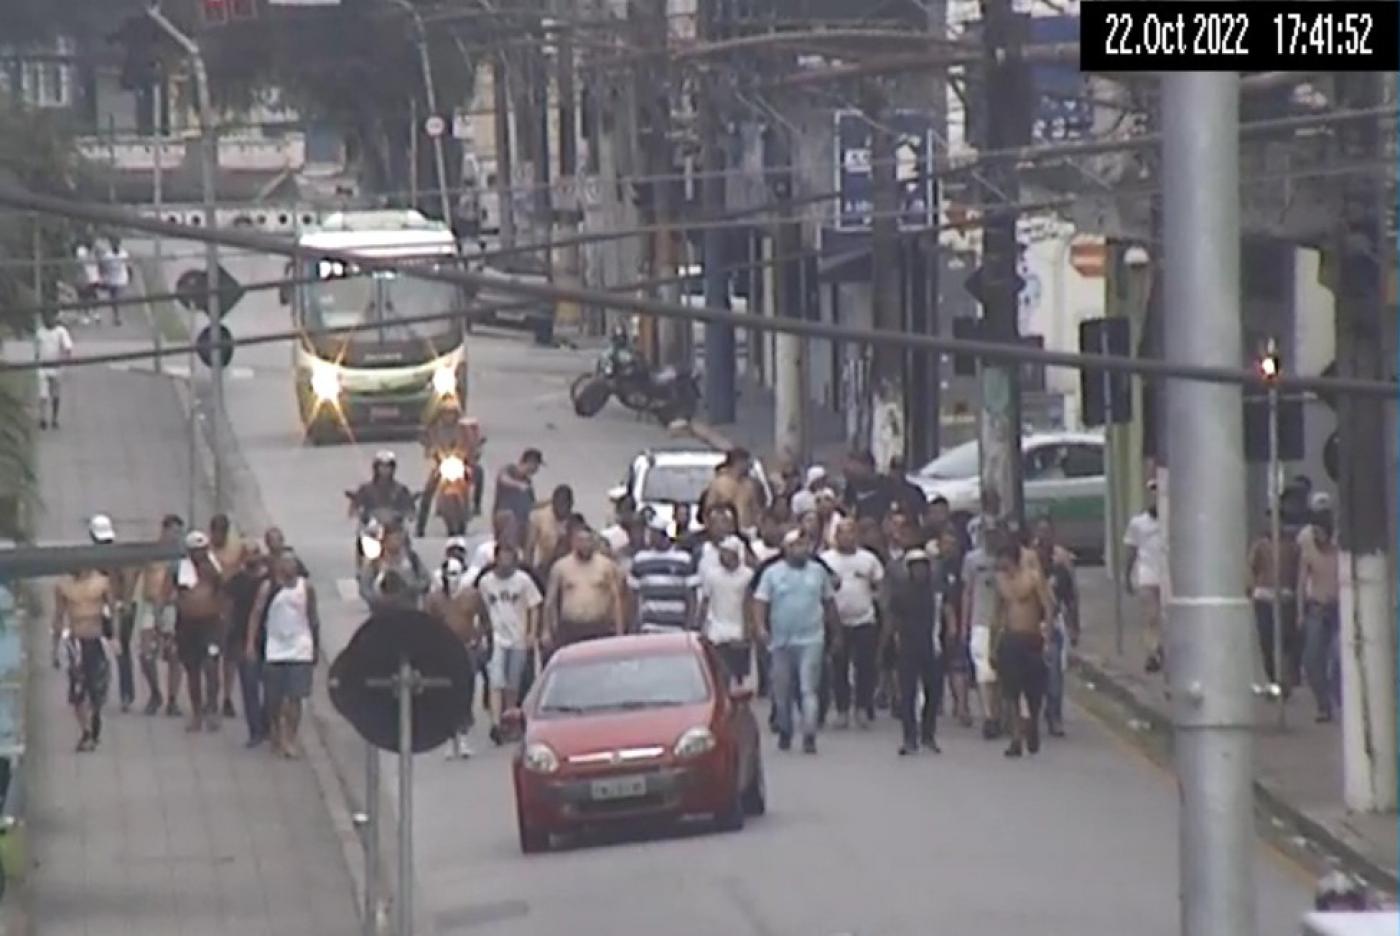 vários homens caminhando por rua atrás de um carro vermelho. #paratodosverem